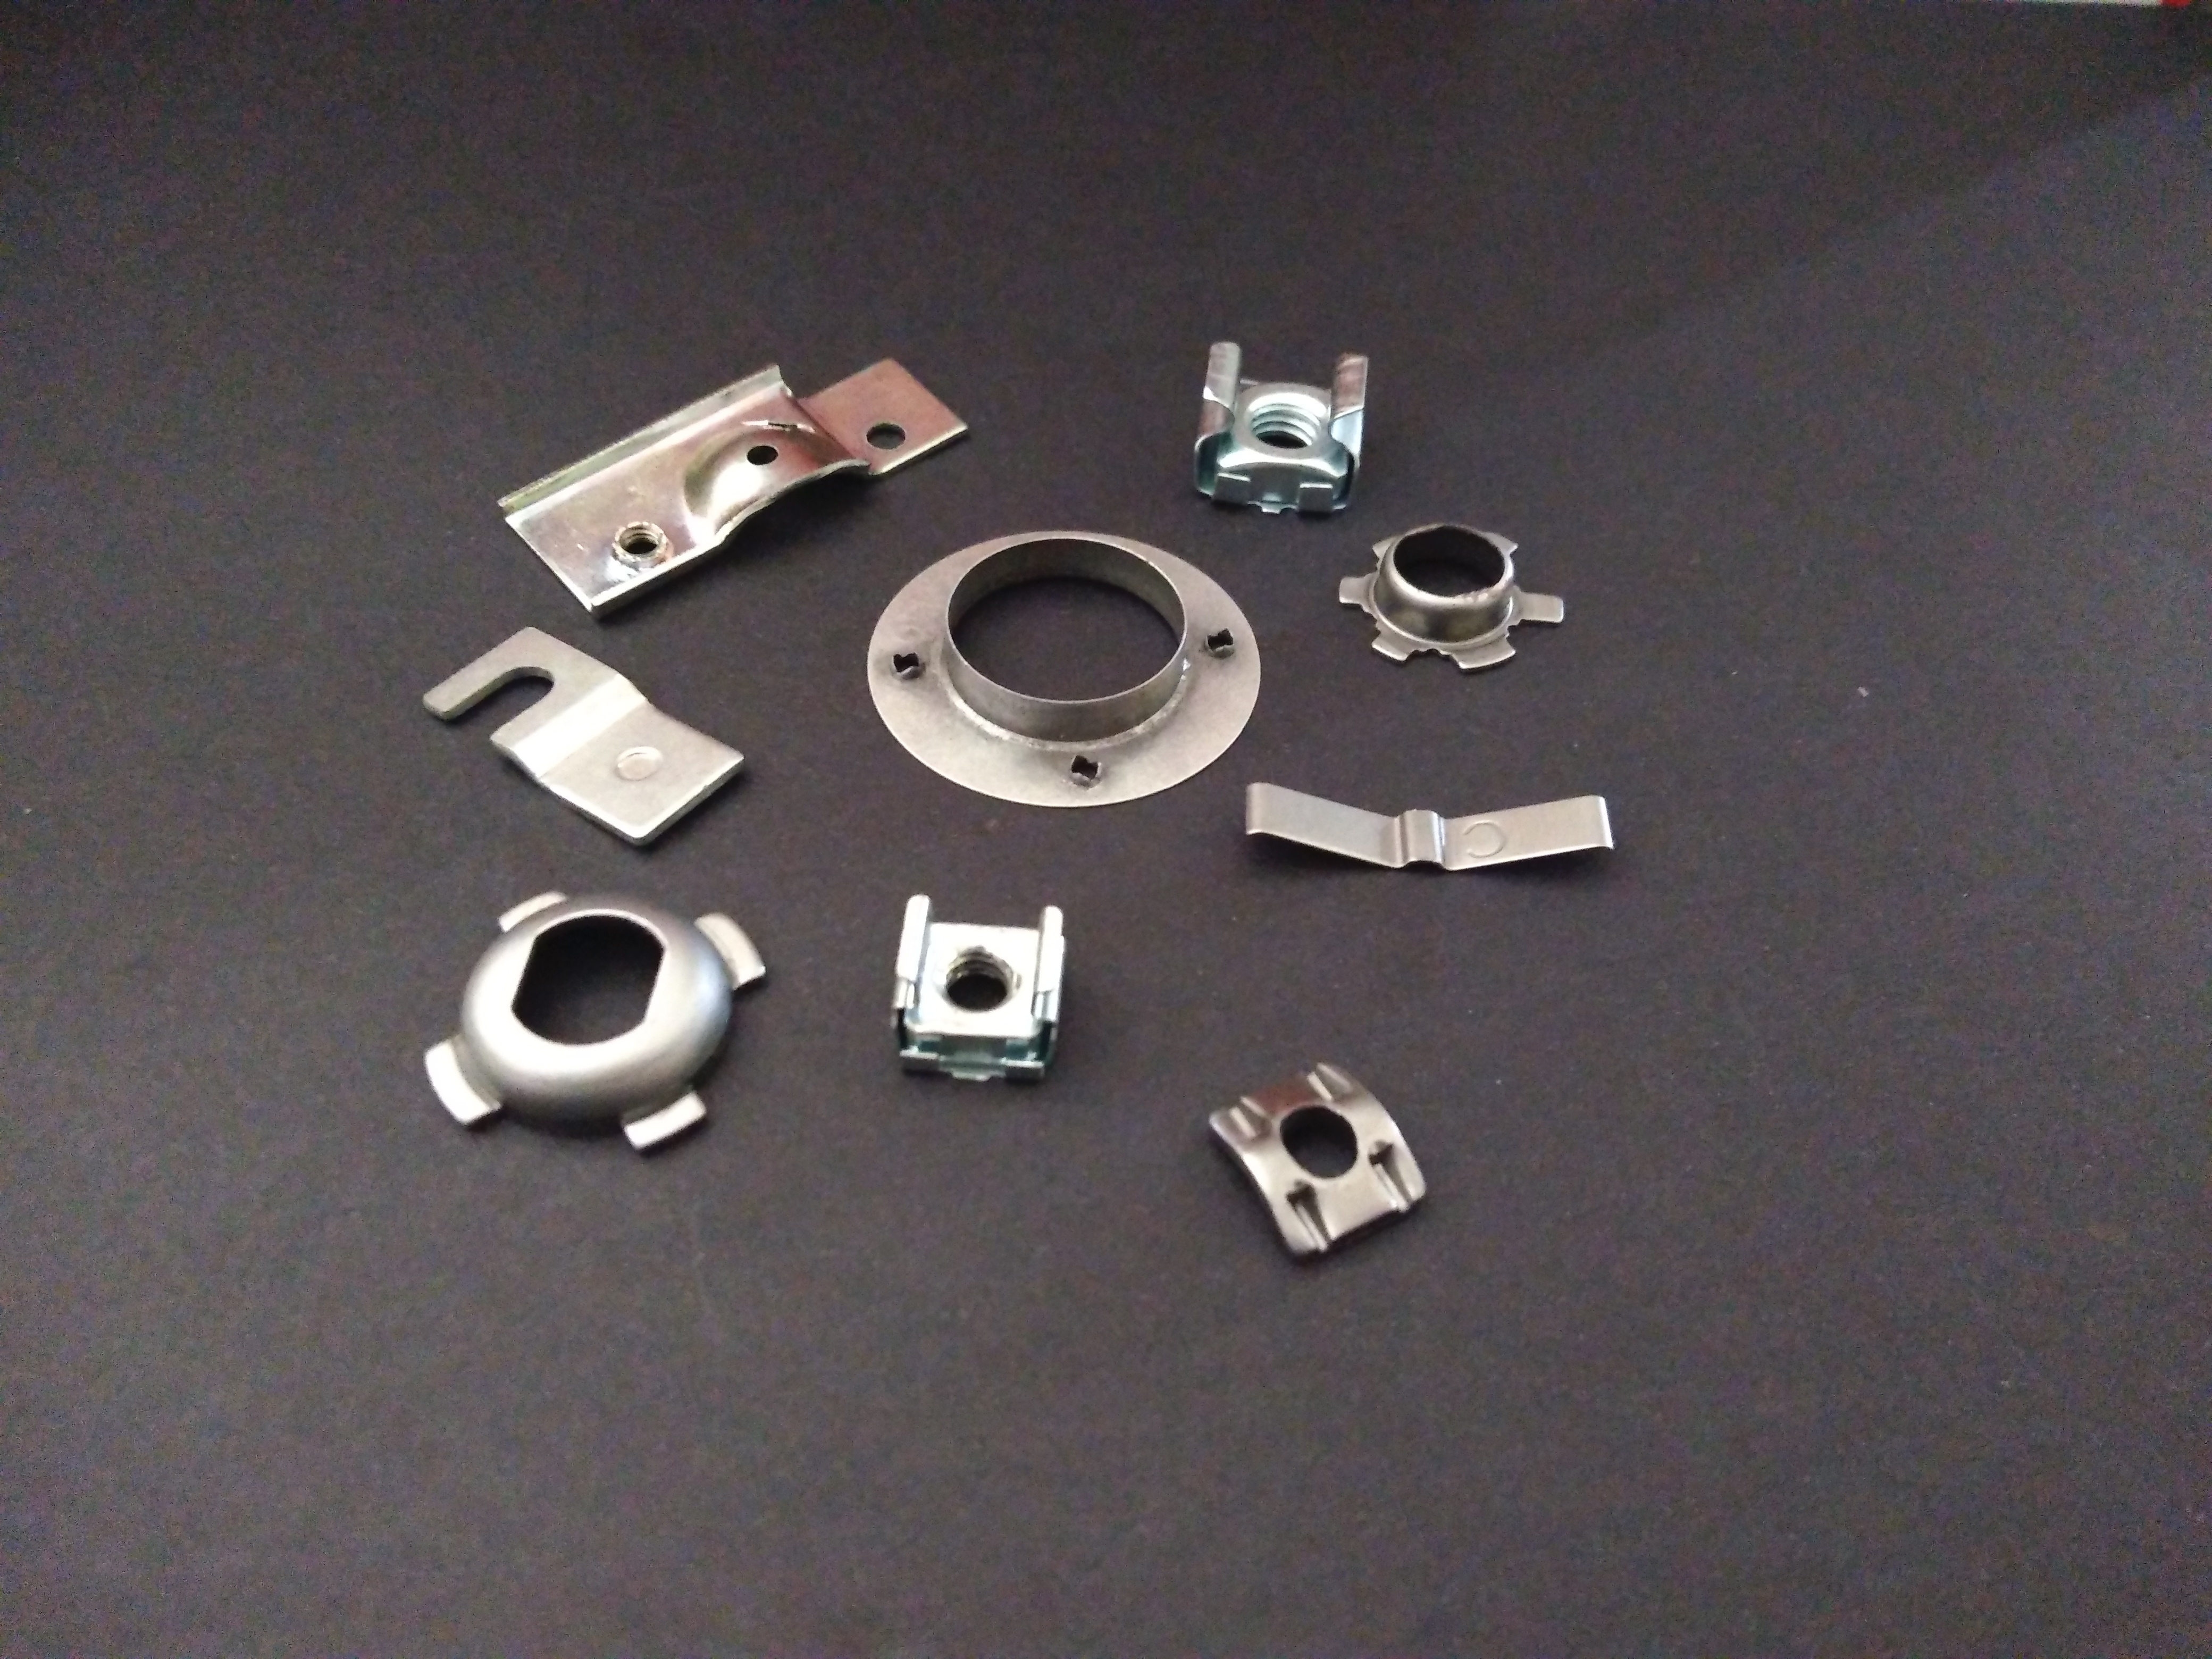 press tool components